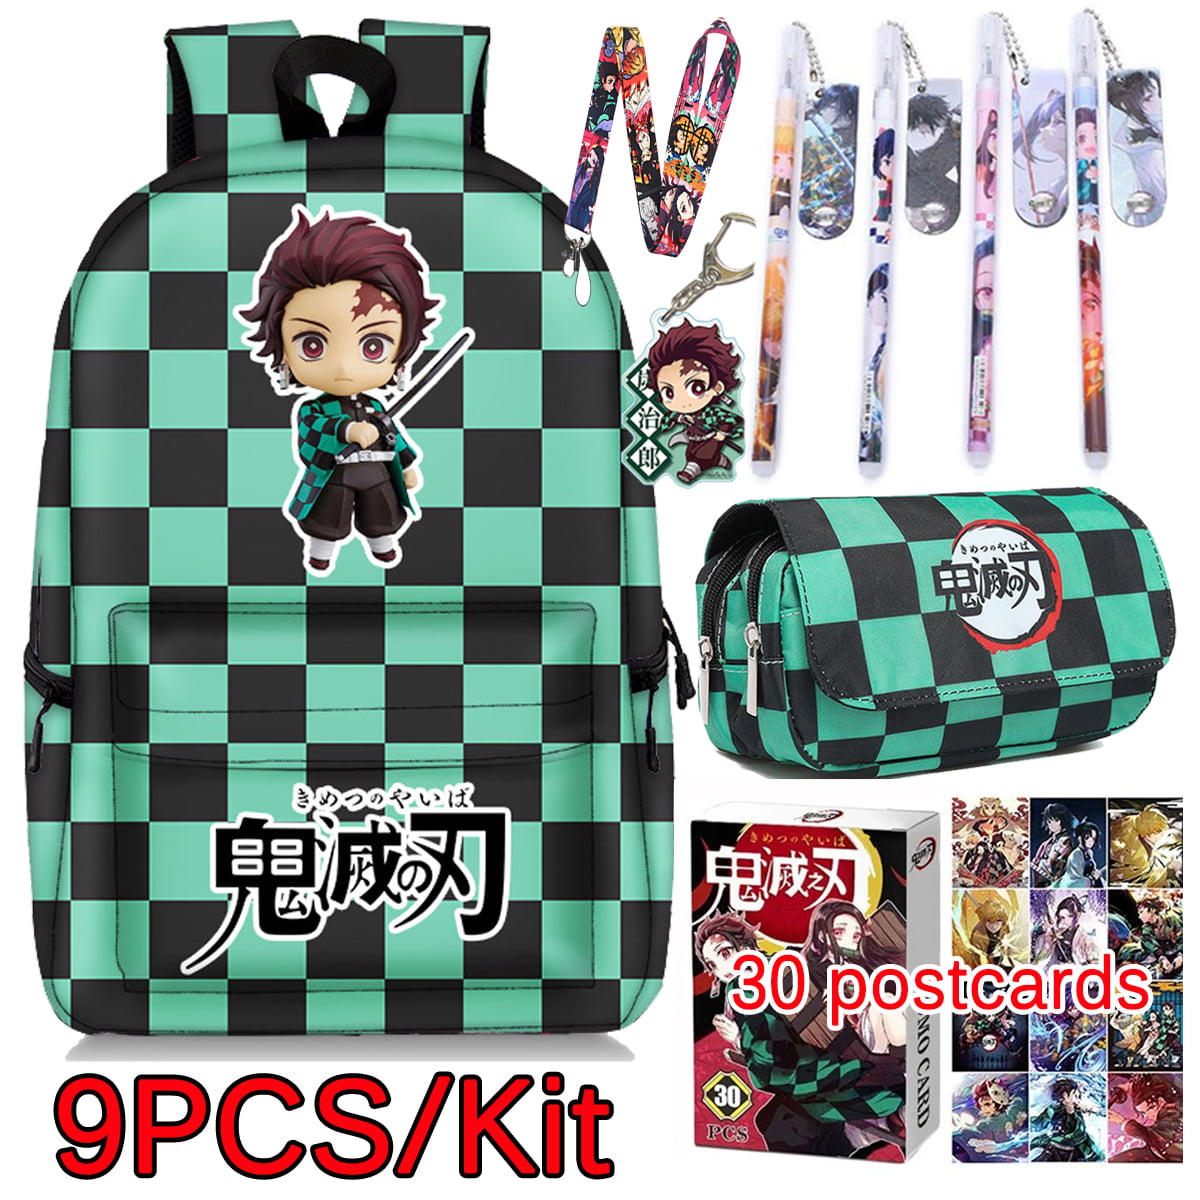 Anime Demon Slayer Backpack Schoolbag PU Shoulder Bag Knapsack Cosplay Gift 